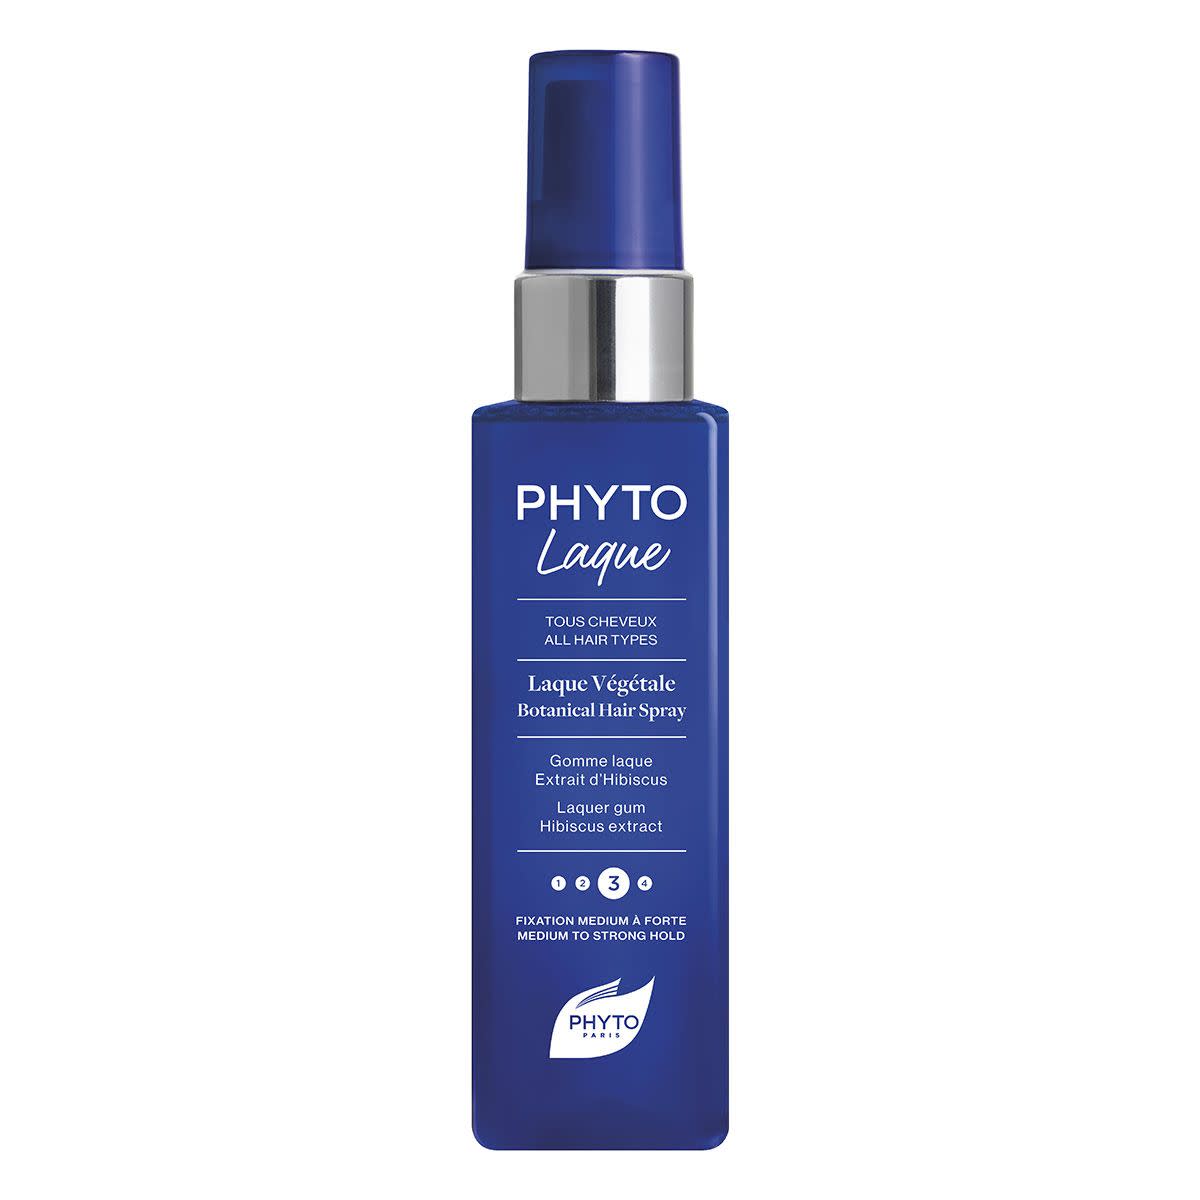 981510858 - Phyto Phytolaque Blu lacca Vegetale Fissaggio Medio - Forte 100ml - 4708764_1.jpg